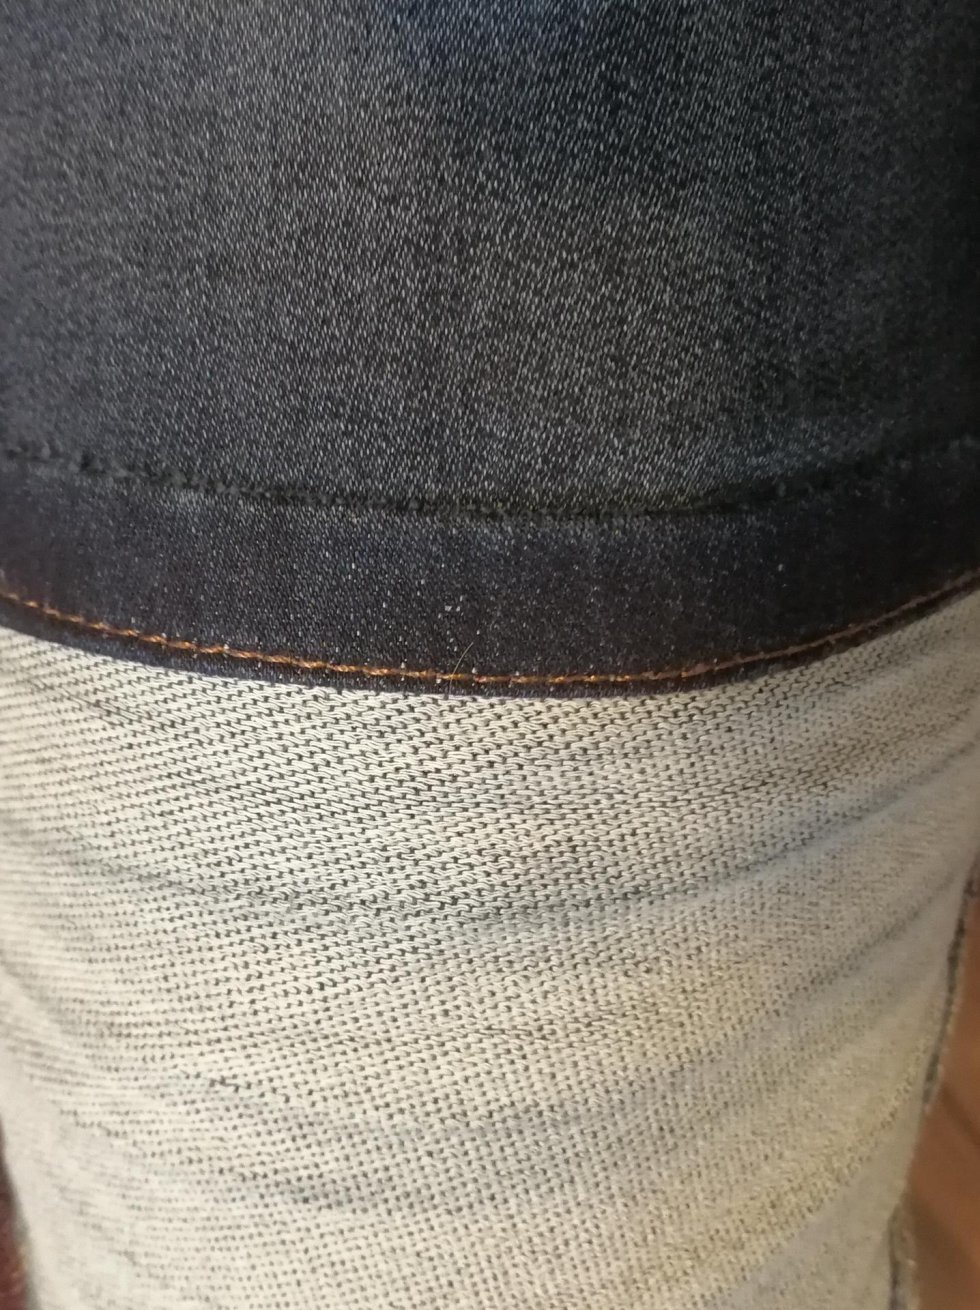 Yderlook vs inderlook - Diesels nye bastard-buks har praktisk talt ødelagt de klassiske jeans for mig